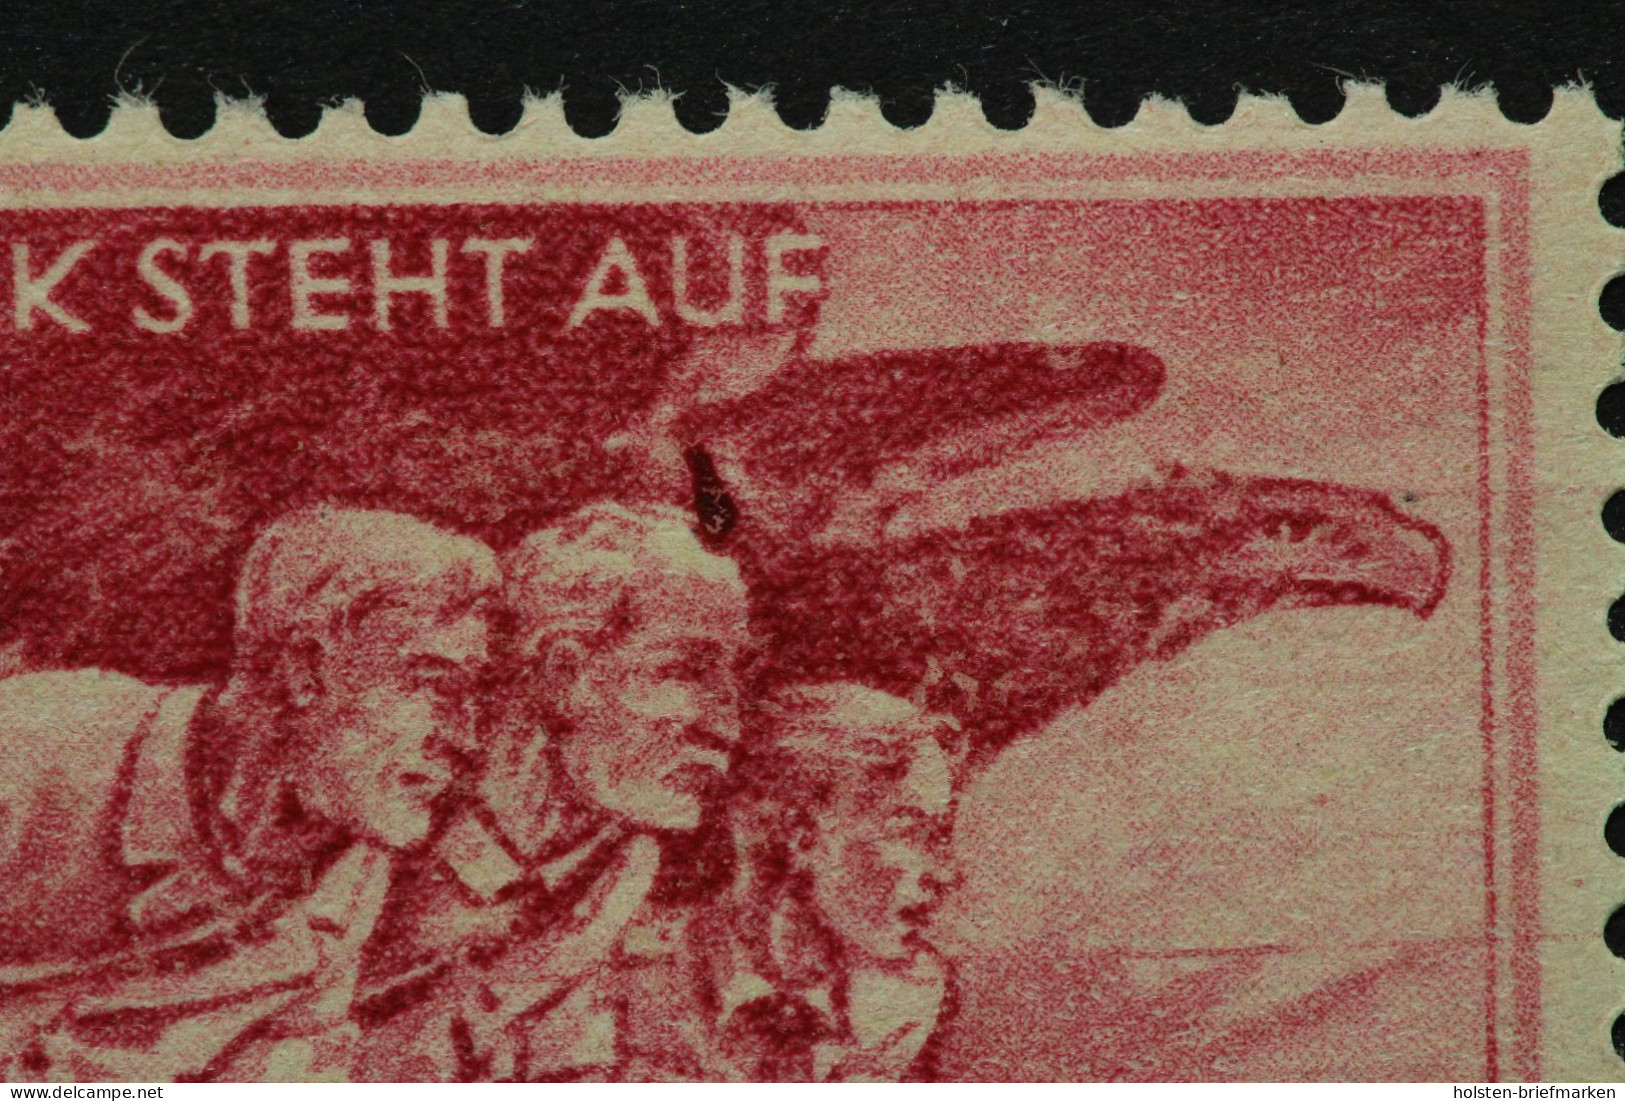 Deutsches Reich, MiNr. 908 PF VI, Postfrisch, Altsignatur - Varietà & Curiosità